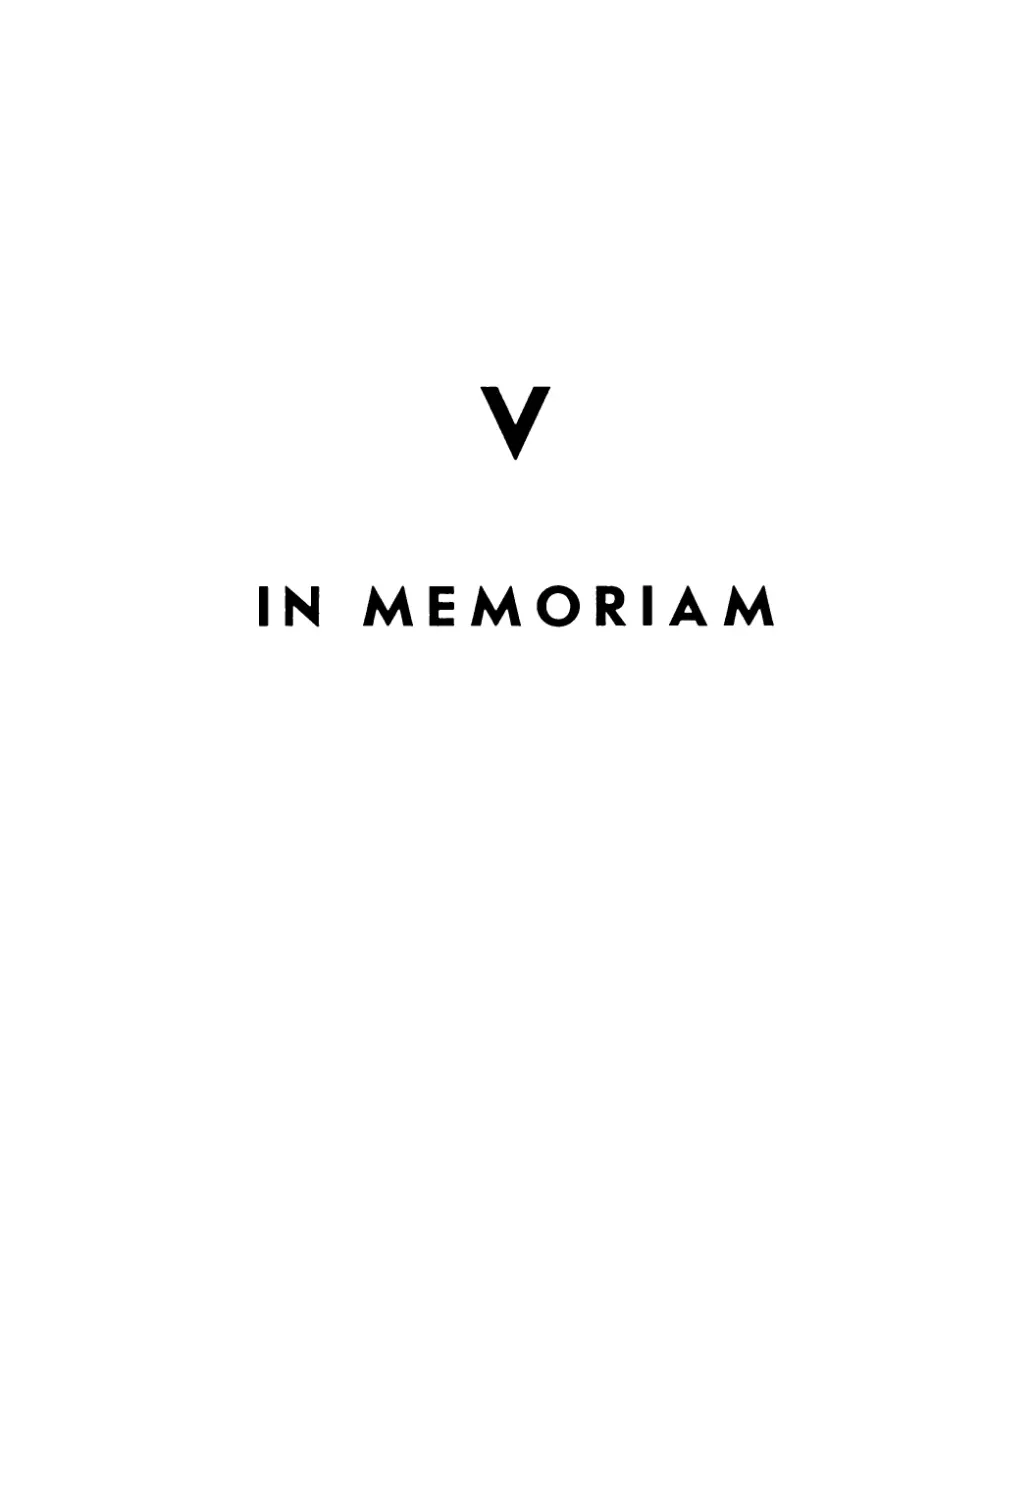 V. In memoriam